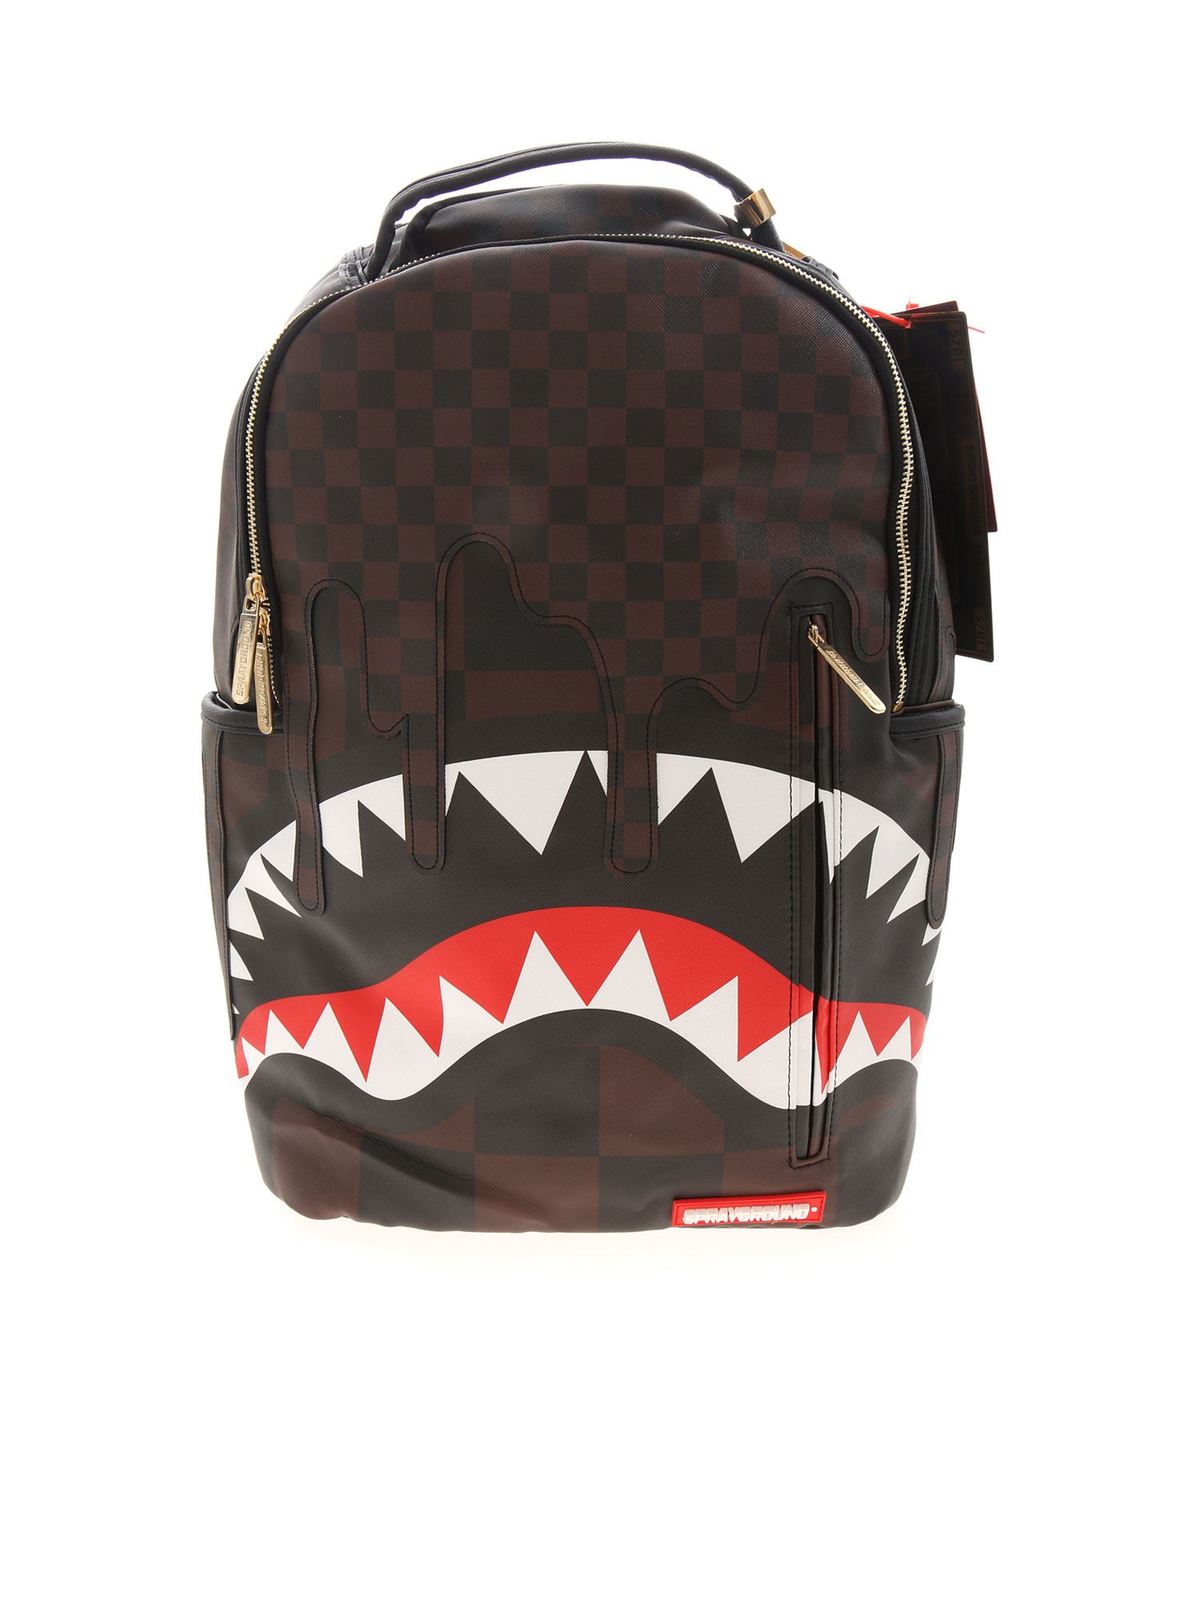 Backpacks Sprayground - Shark in Paris backpack in brown and black ...